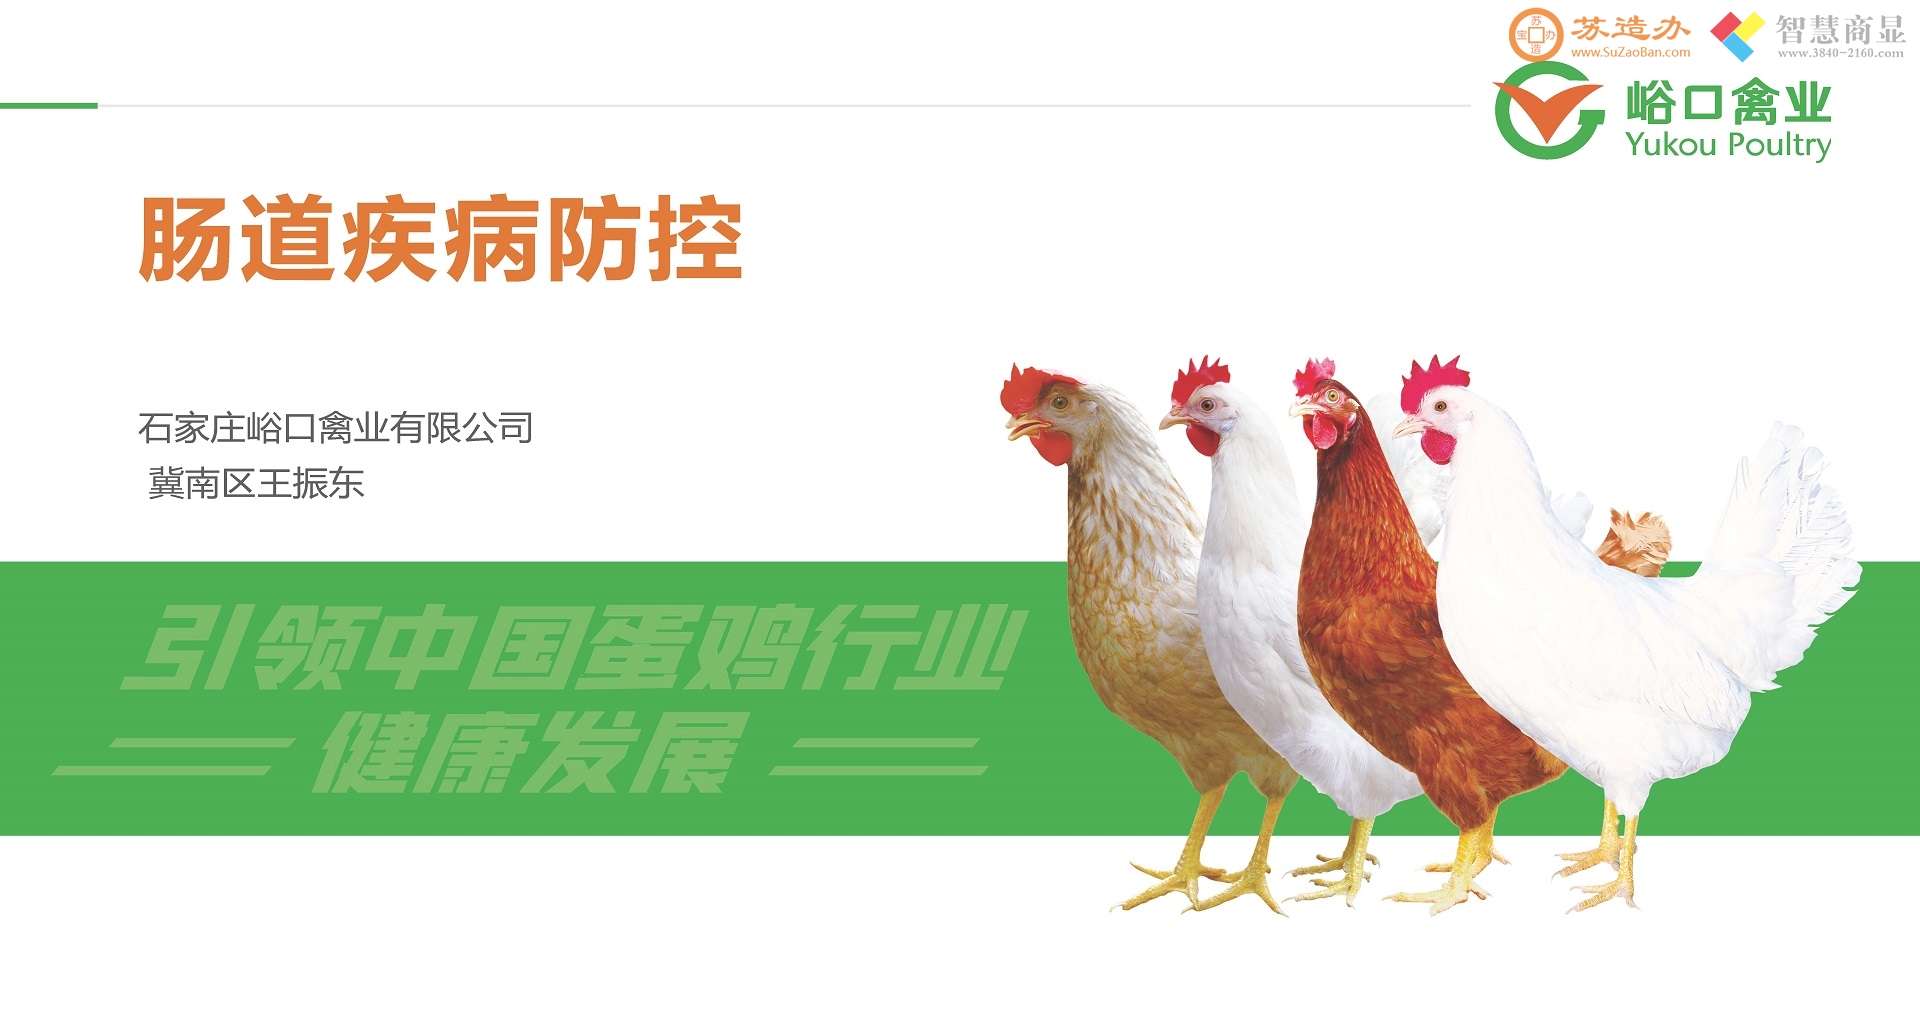 肠道疾病防治-养鸡就是养健康的消化道-峪口禽业王振东